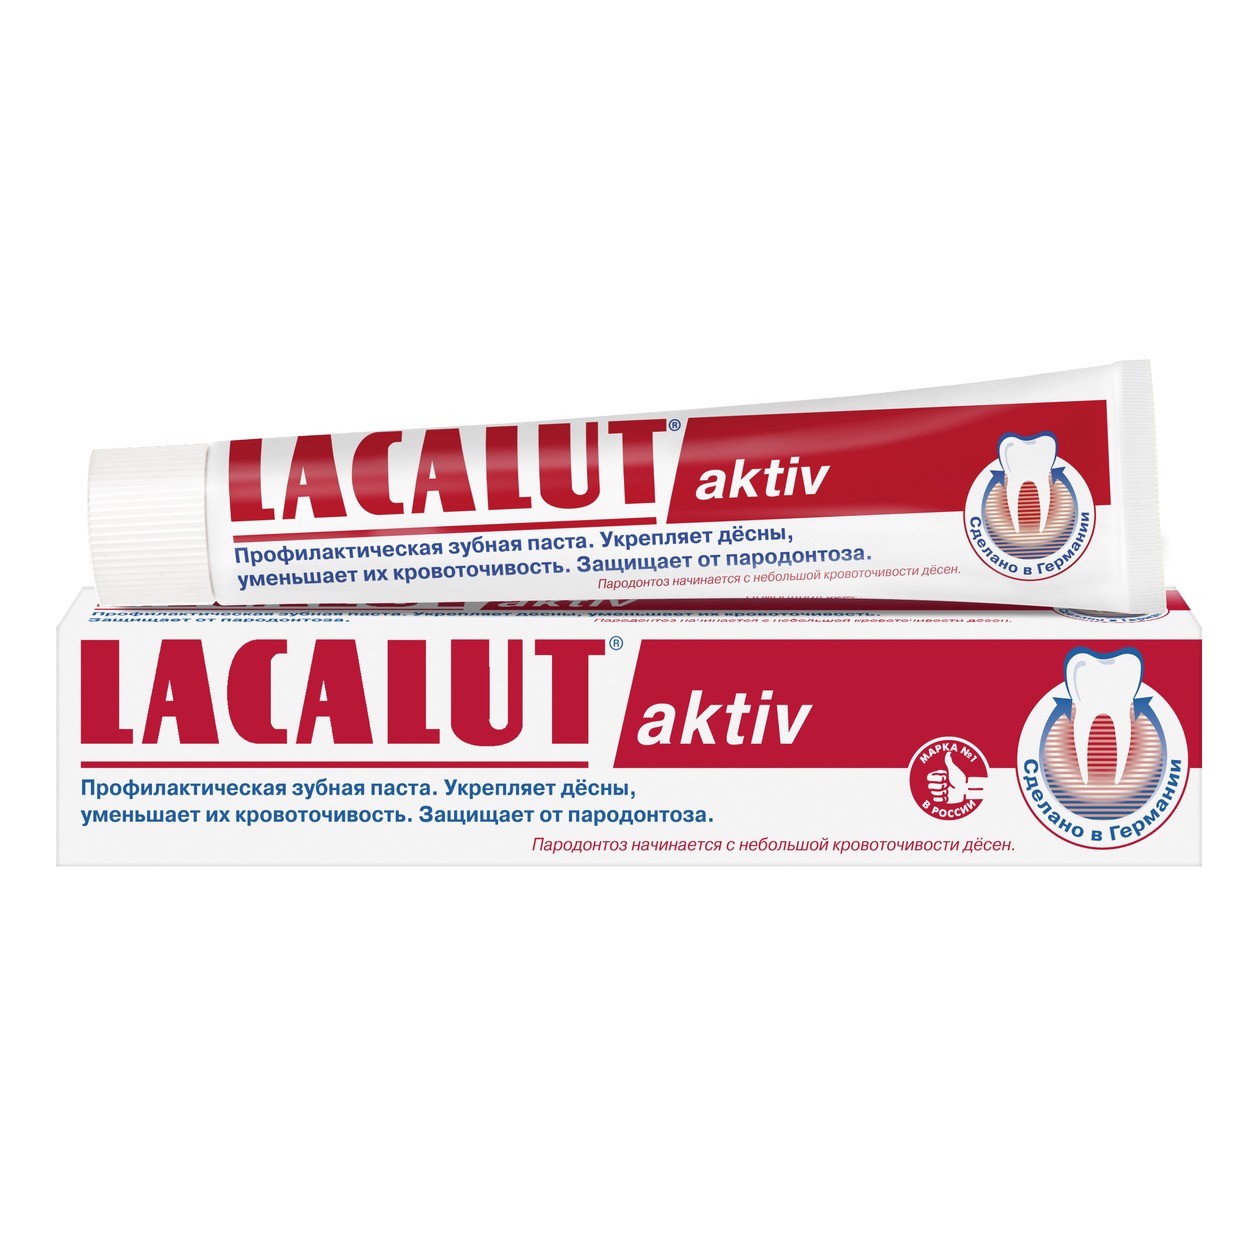 Зубная паста Lacalut Activ, 50 мл по акции в Пятерочке